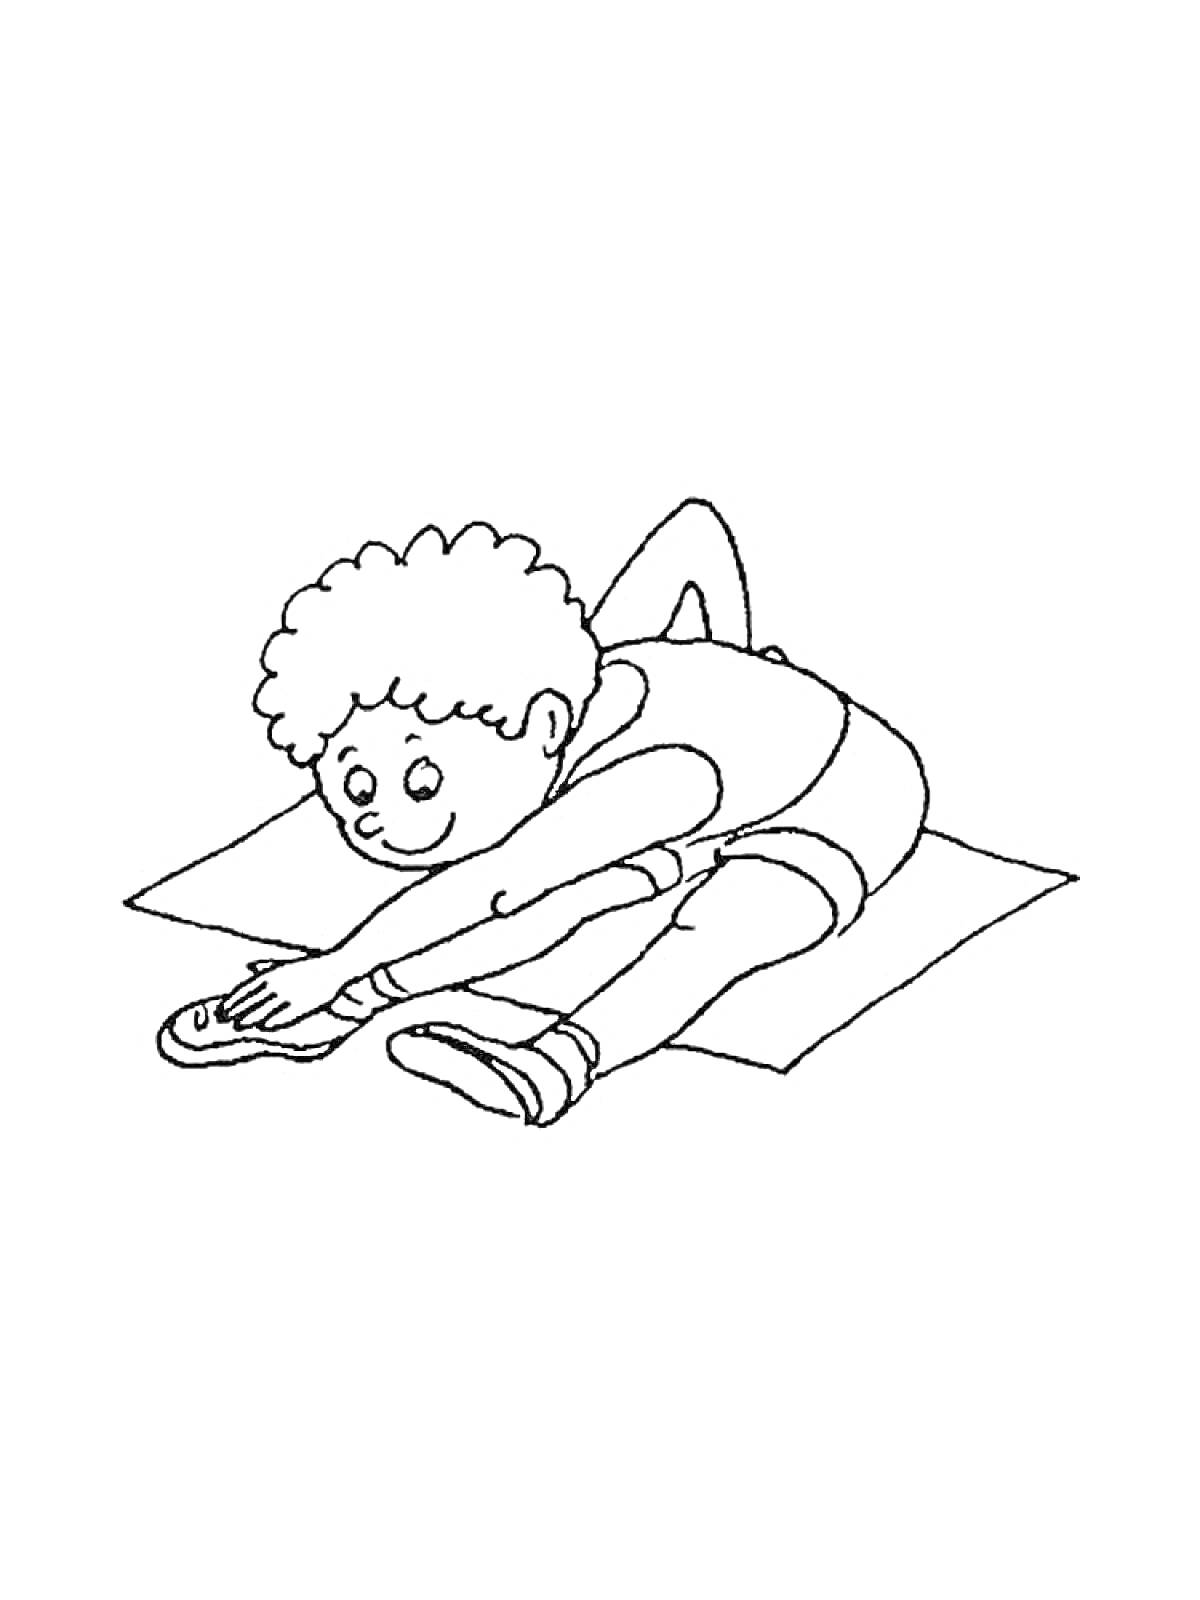 Раскраска Мальчик делает растяжку на коврике